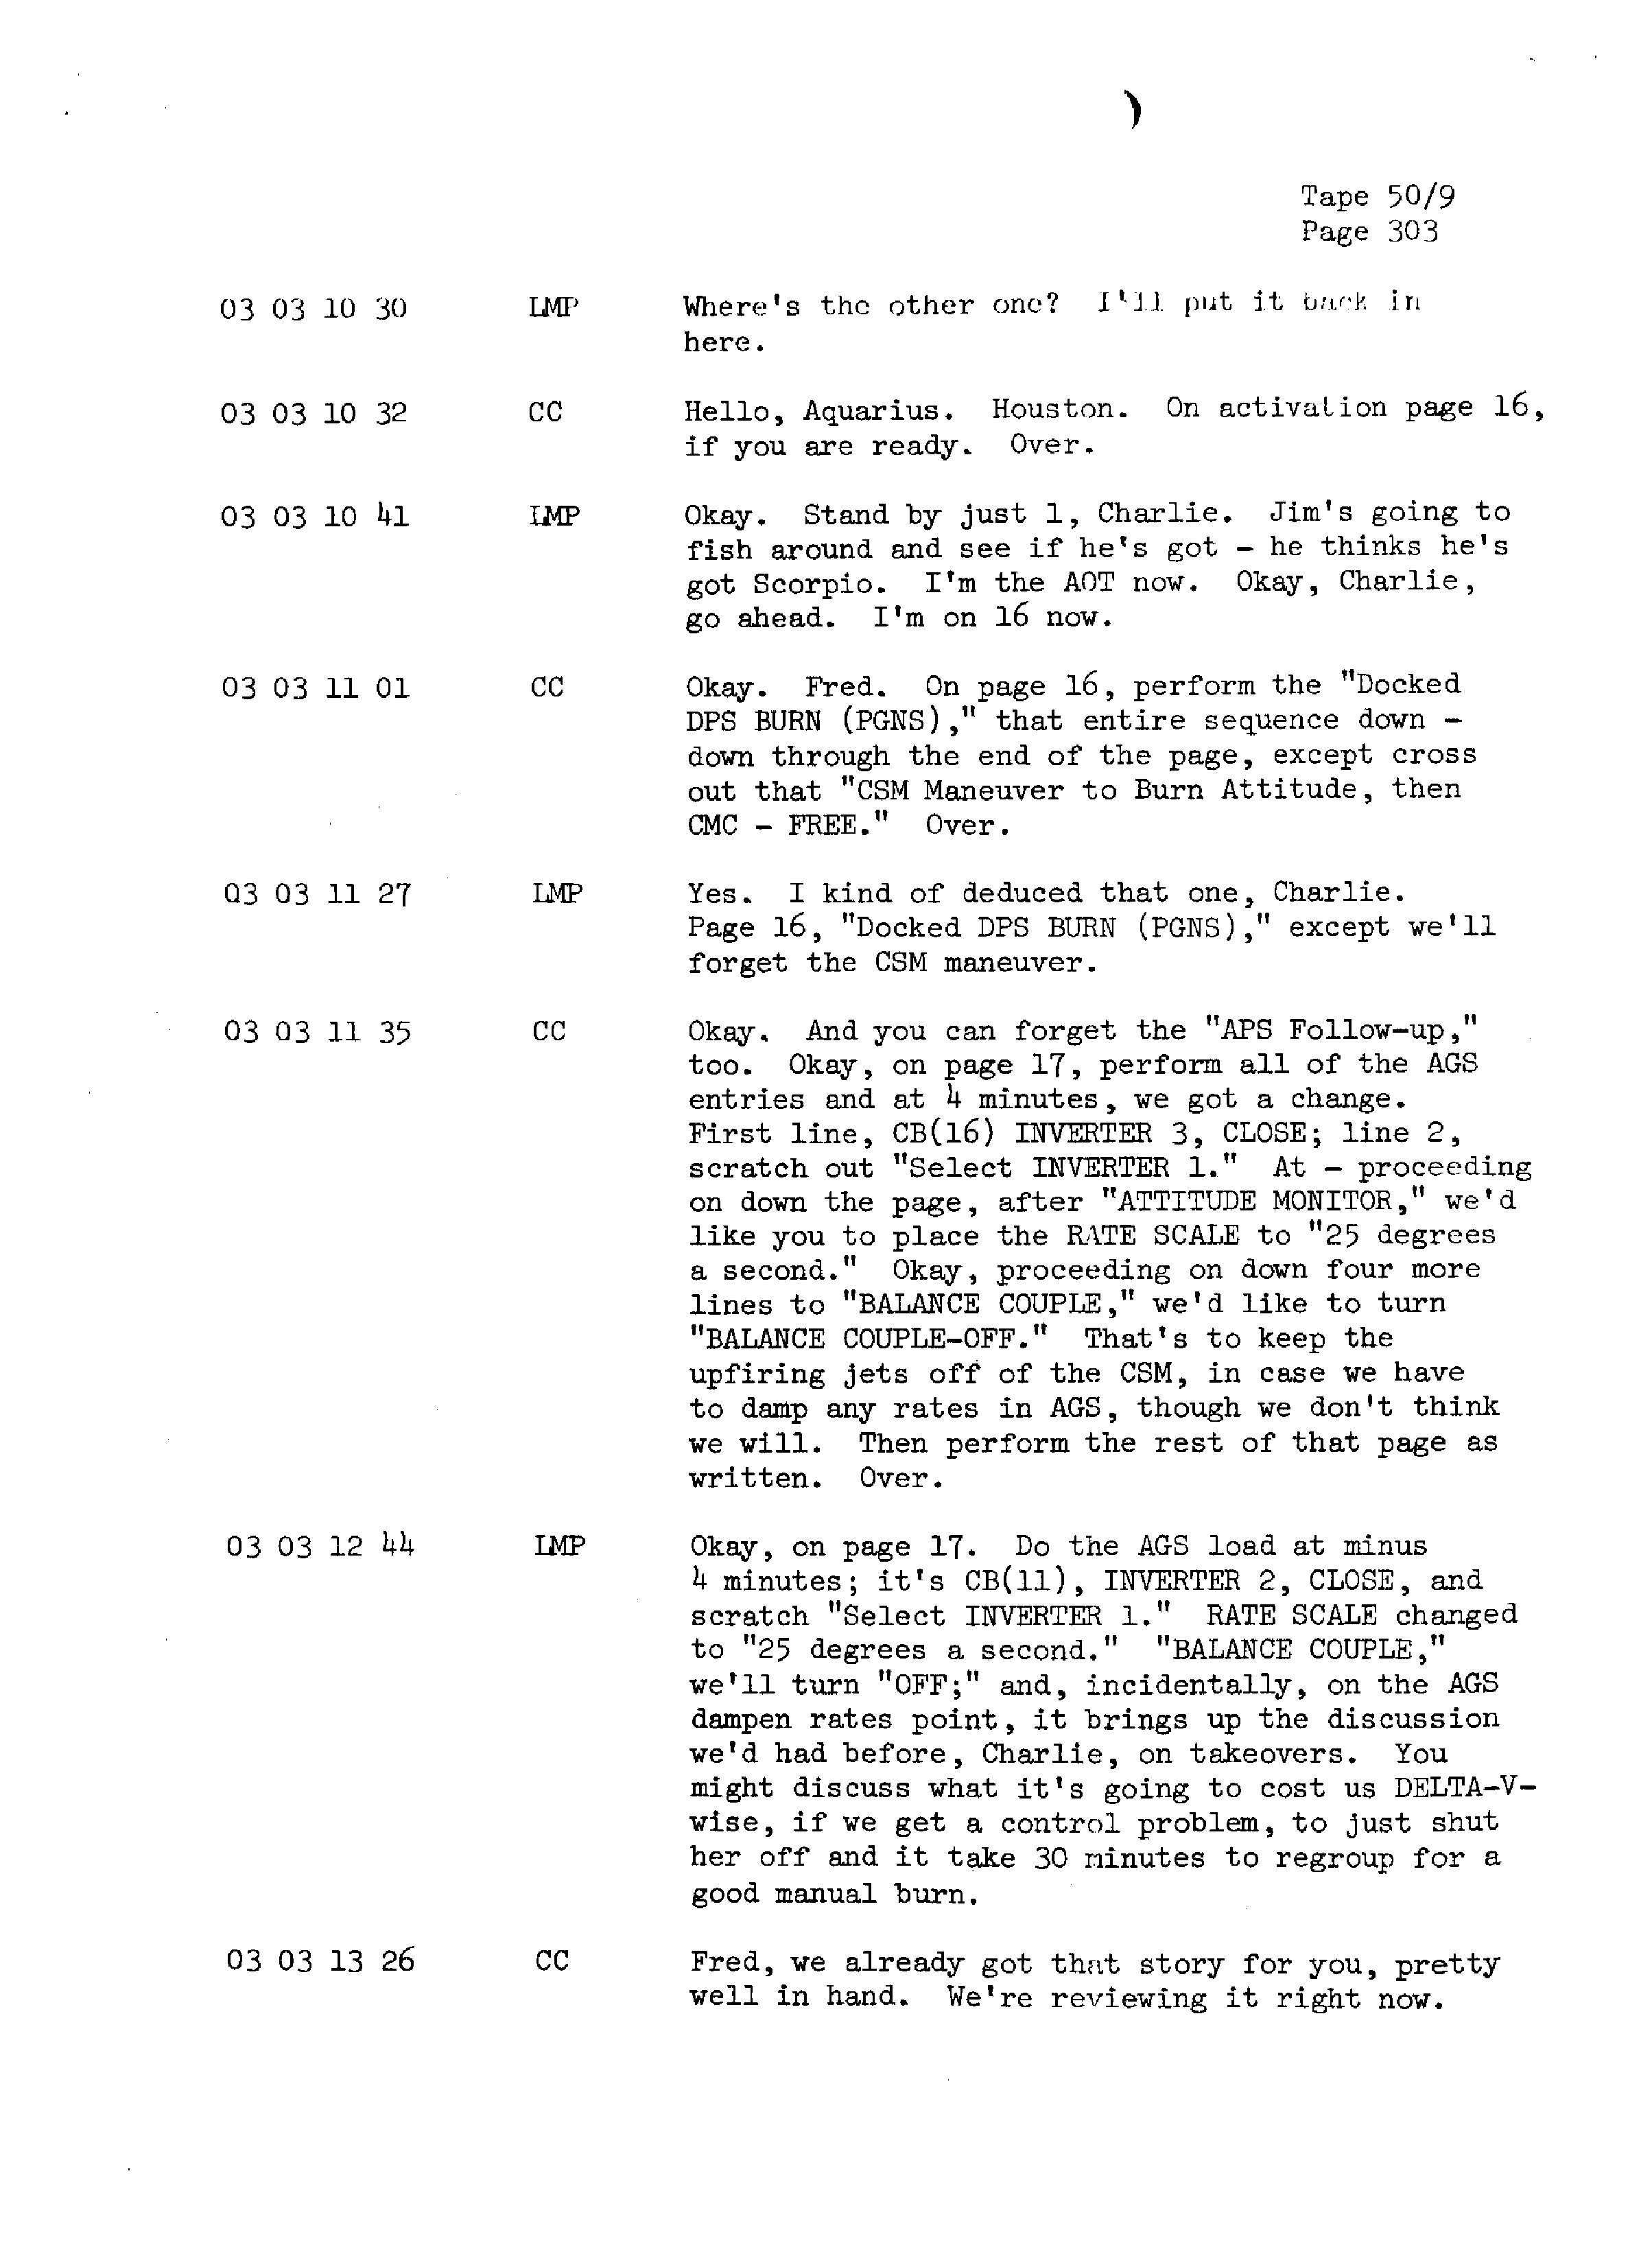 Page 310 of Apollo 13’s original transcript